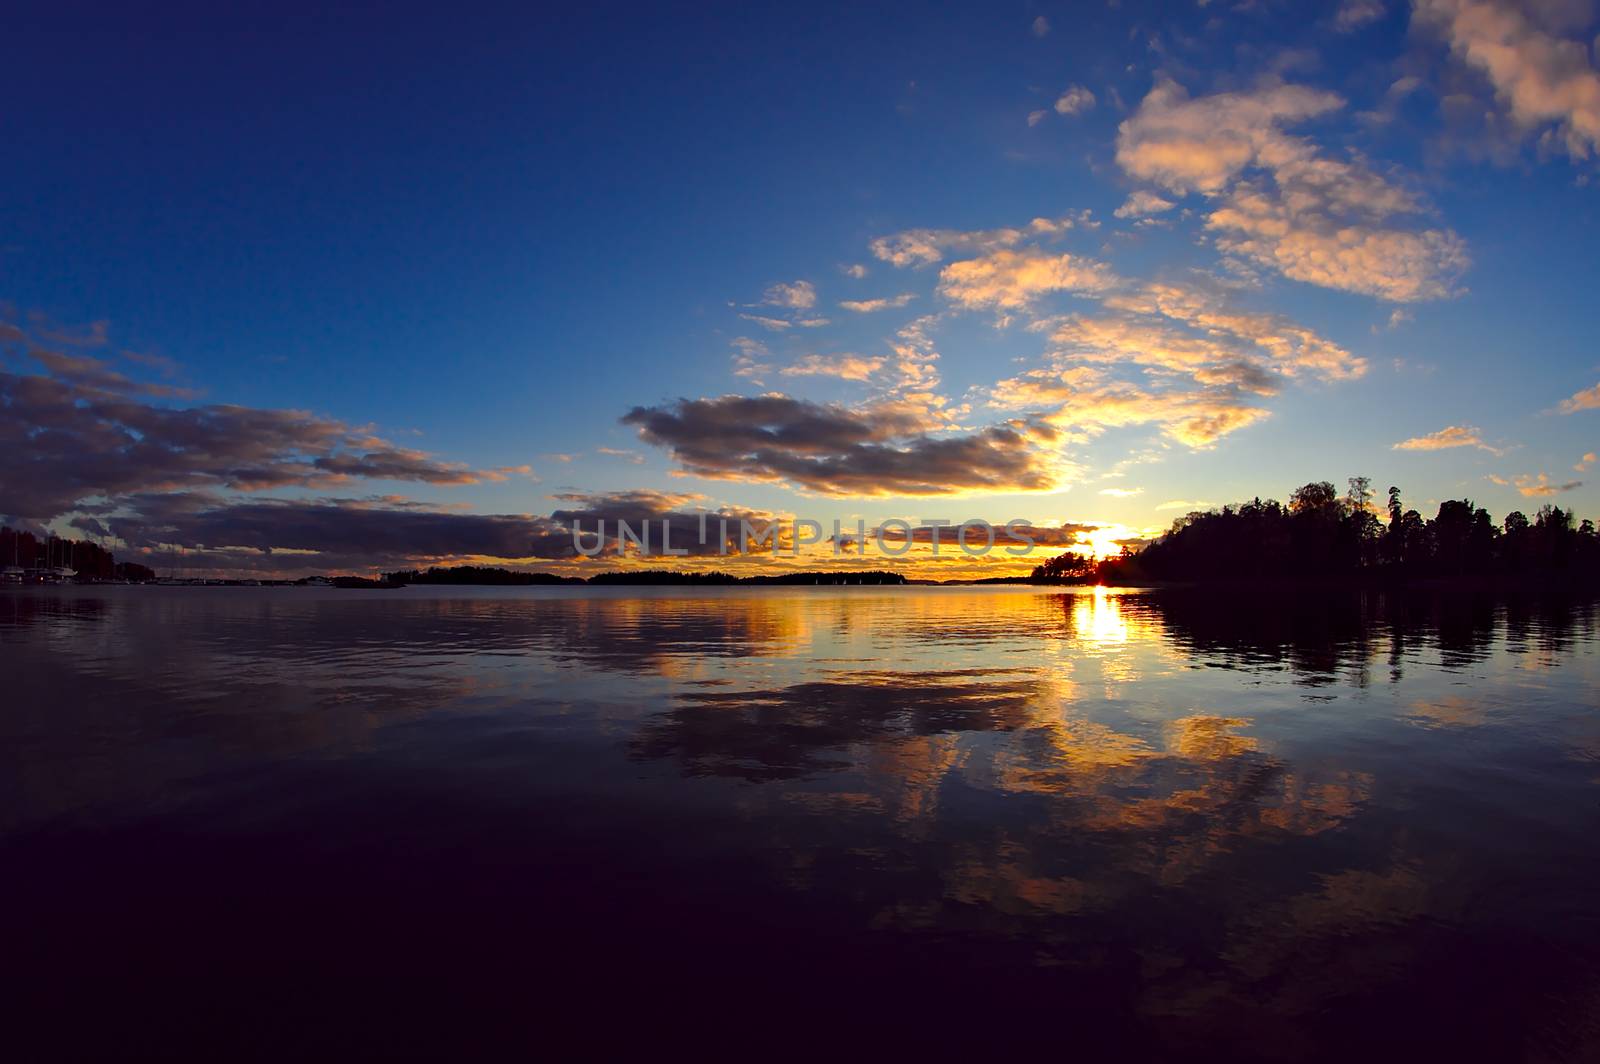 Enjoy the sunset by Valokuva24